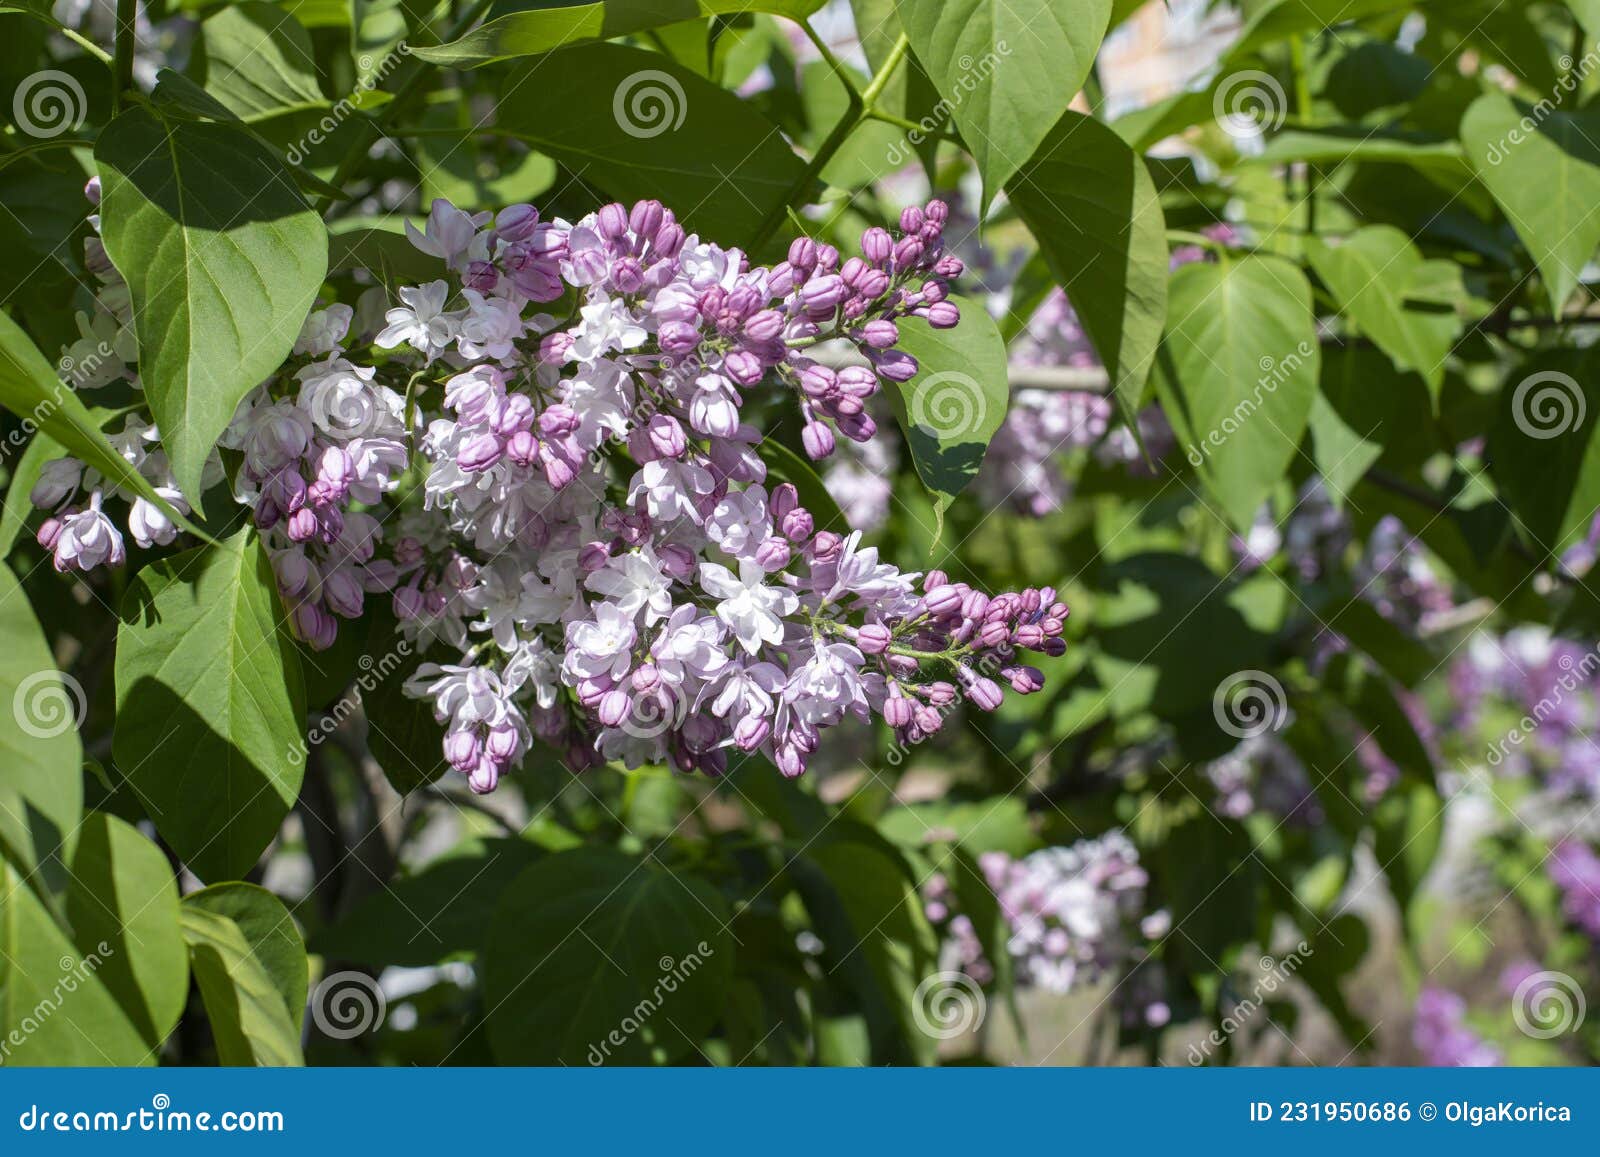 syringa flower lilac blossom natrual color background